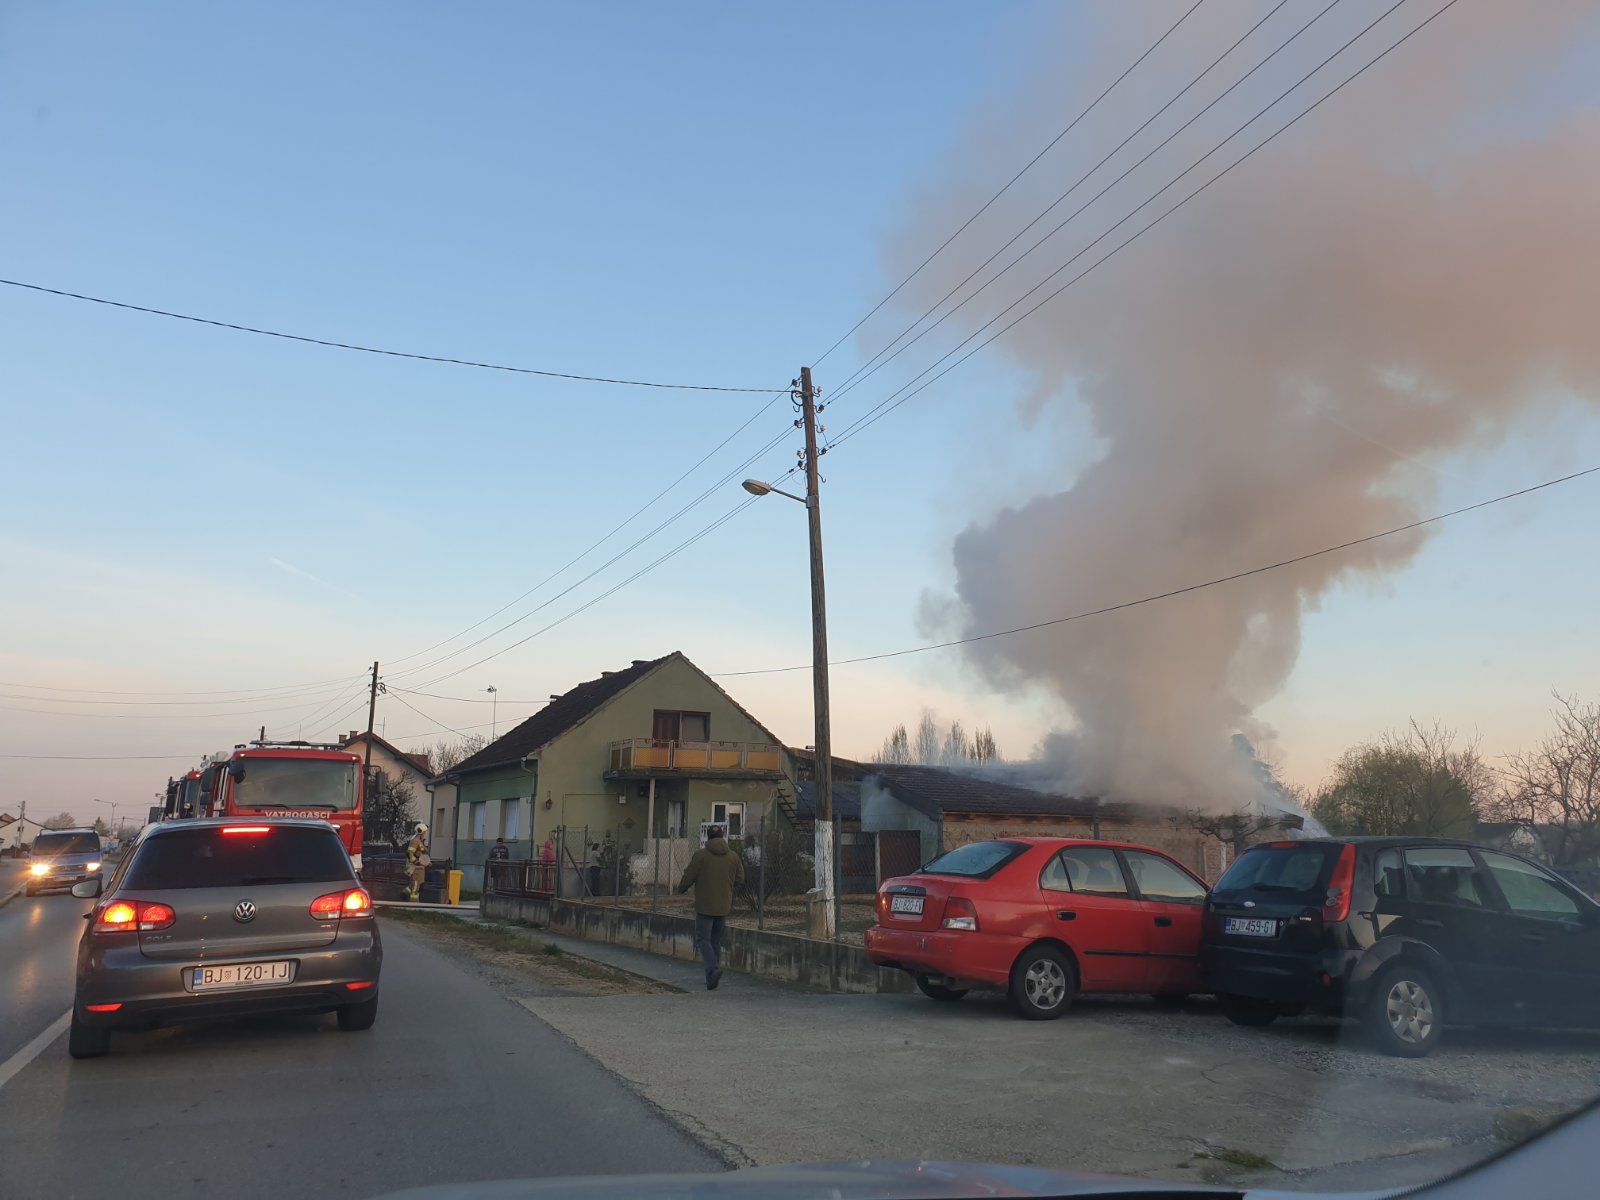 [FOTO] Gori na sjeveru Bjelovara, vatrogasci i druge žurne službe su na terenu!